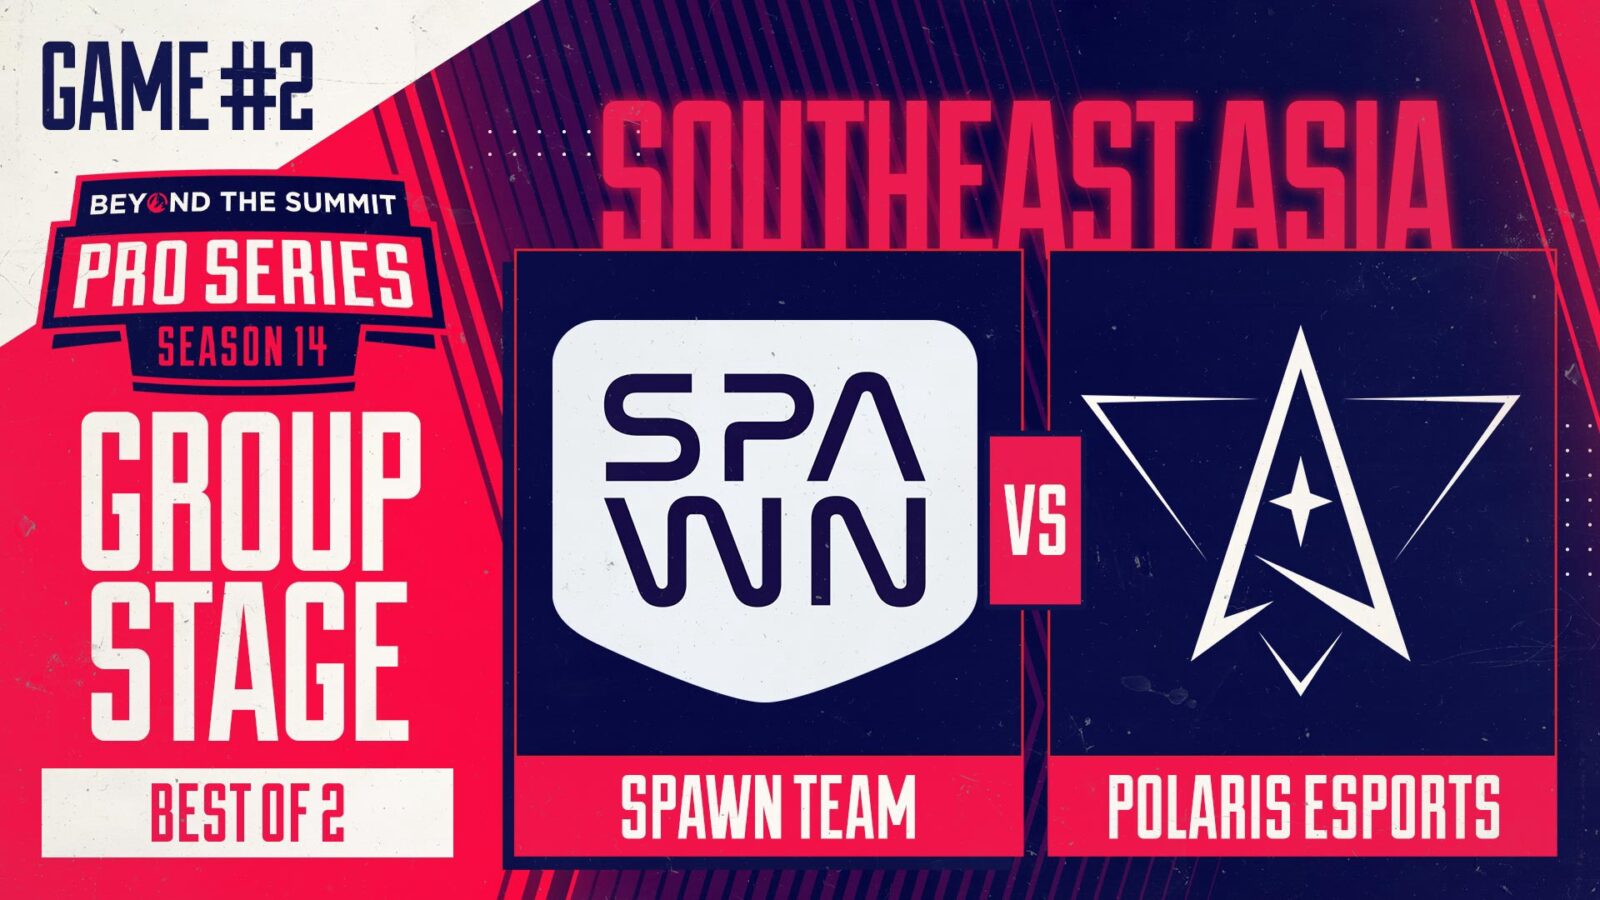 Dota 2: SPAWN vs. Polaris Esports